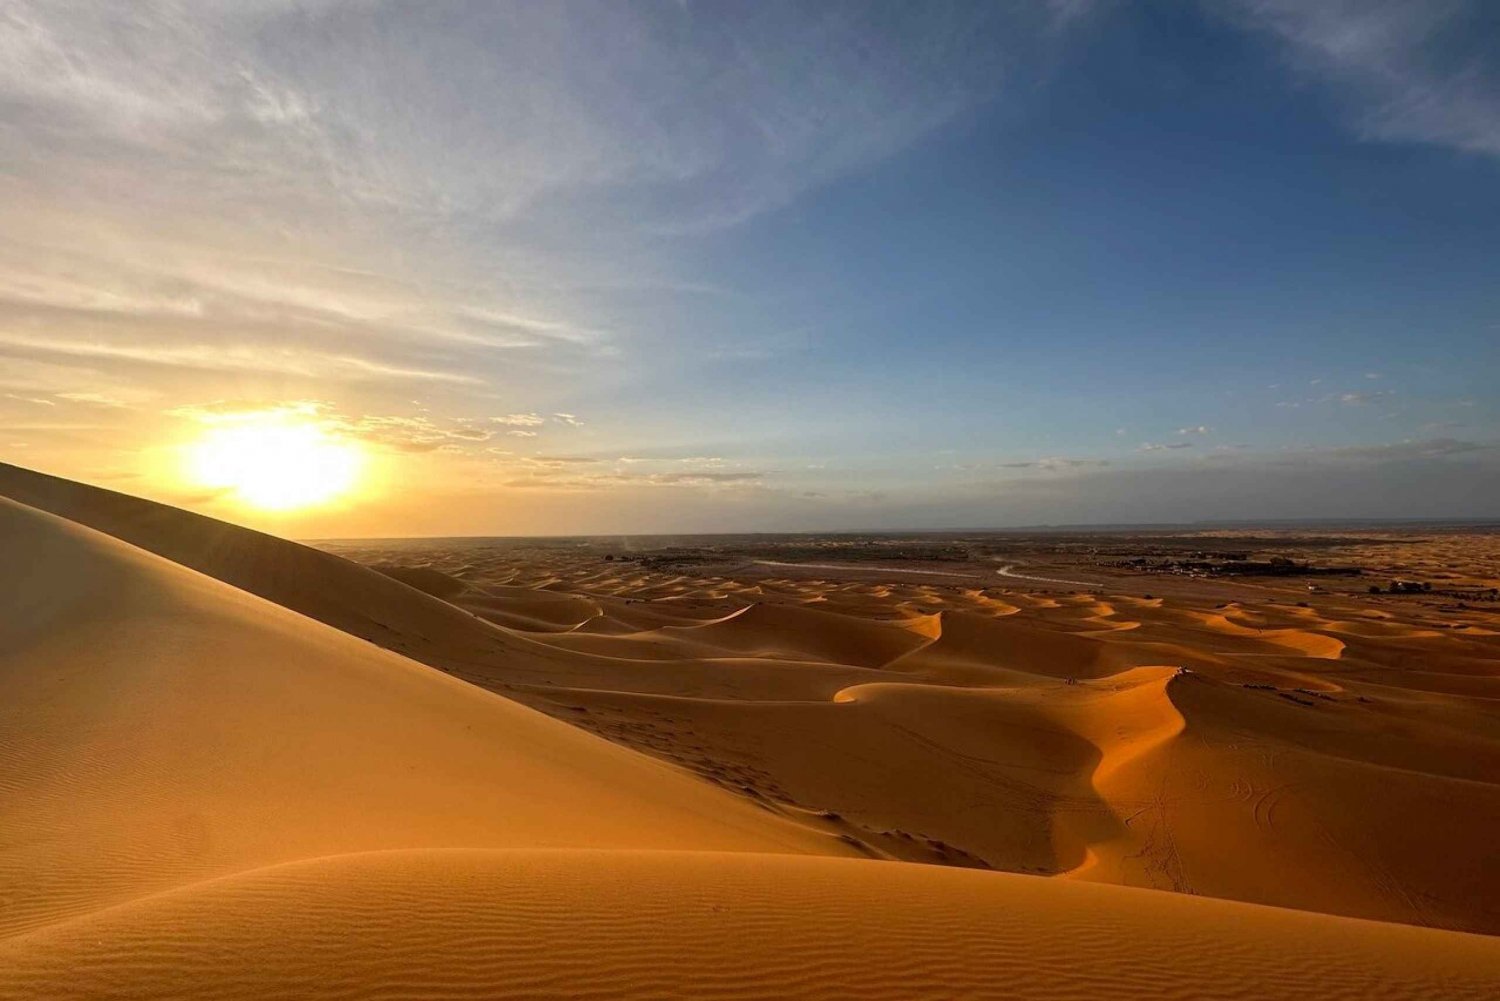 Fesistä: Merzougan kautta Marrakechiin: 3 päivän ylellinen aavikkoretki